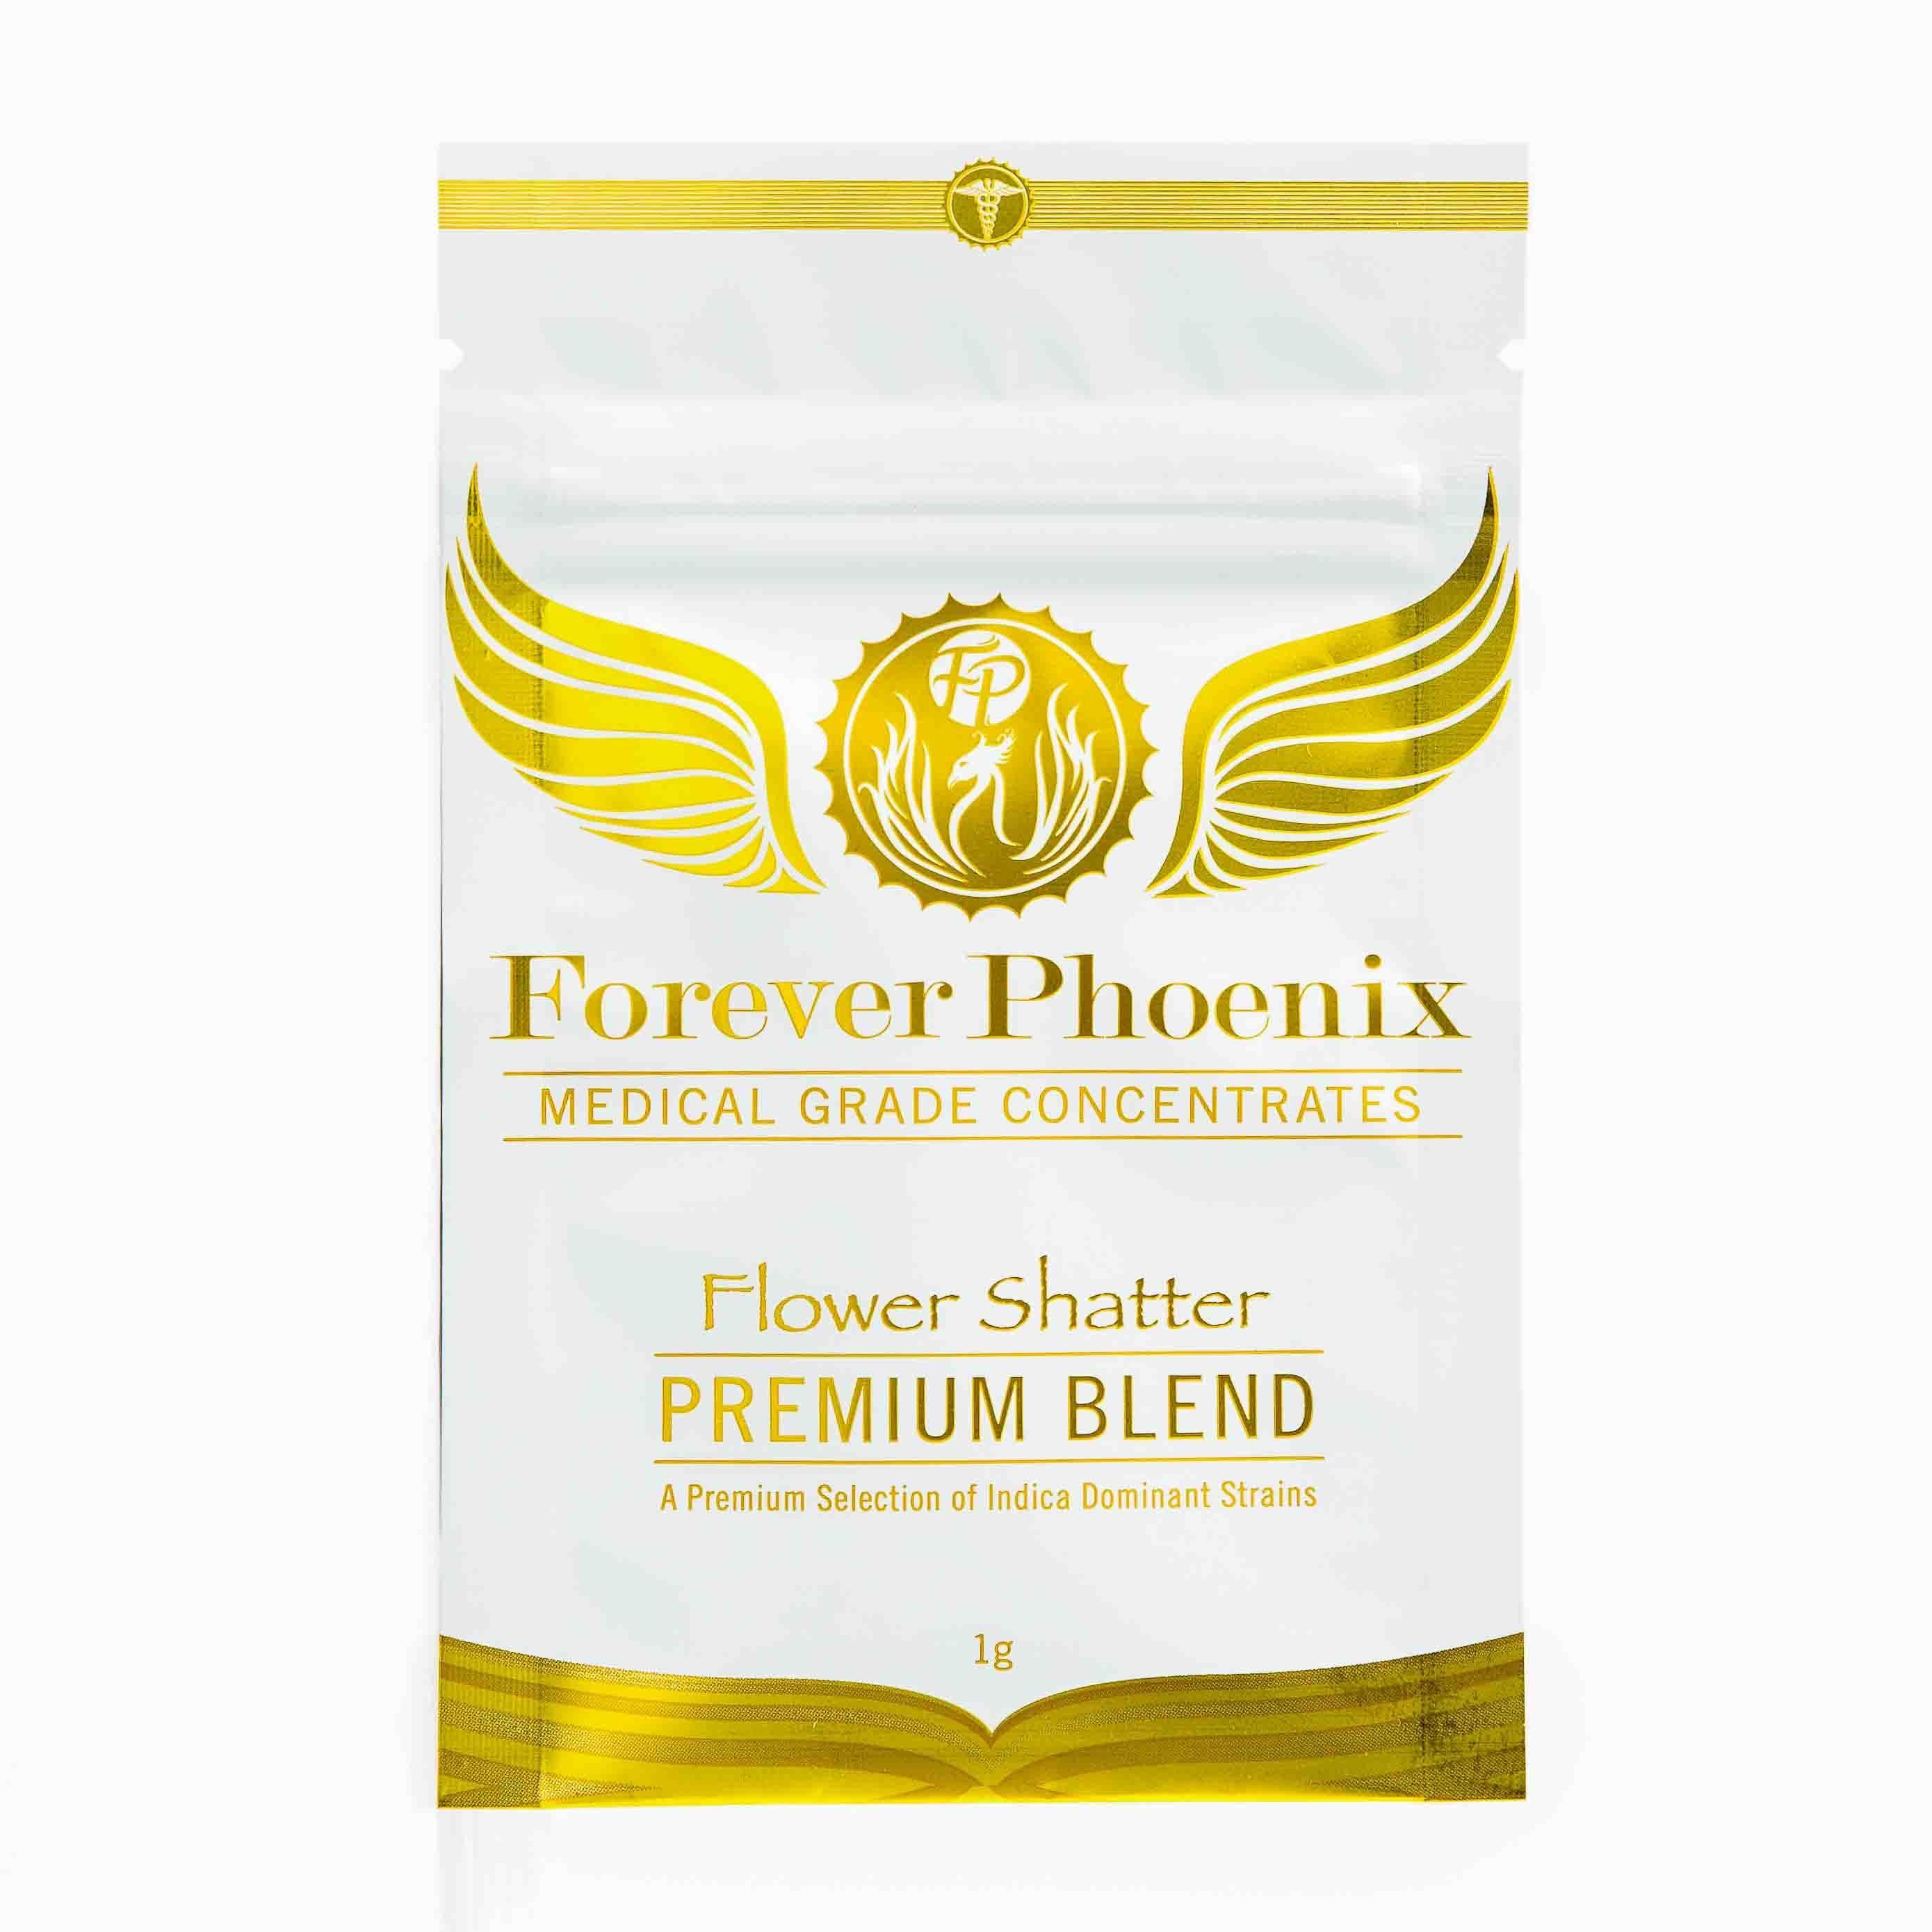 Forever Phoenix Premium Blend Shatter